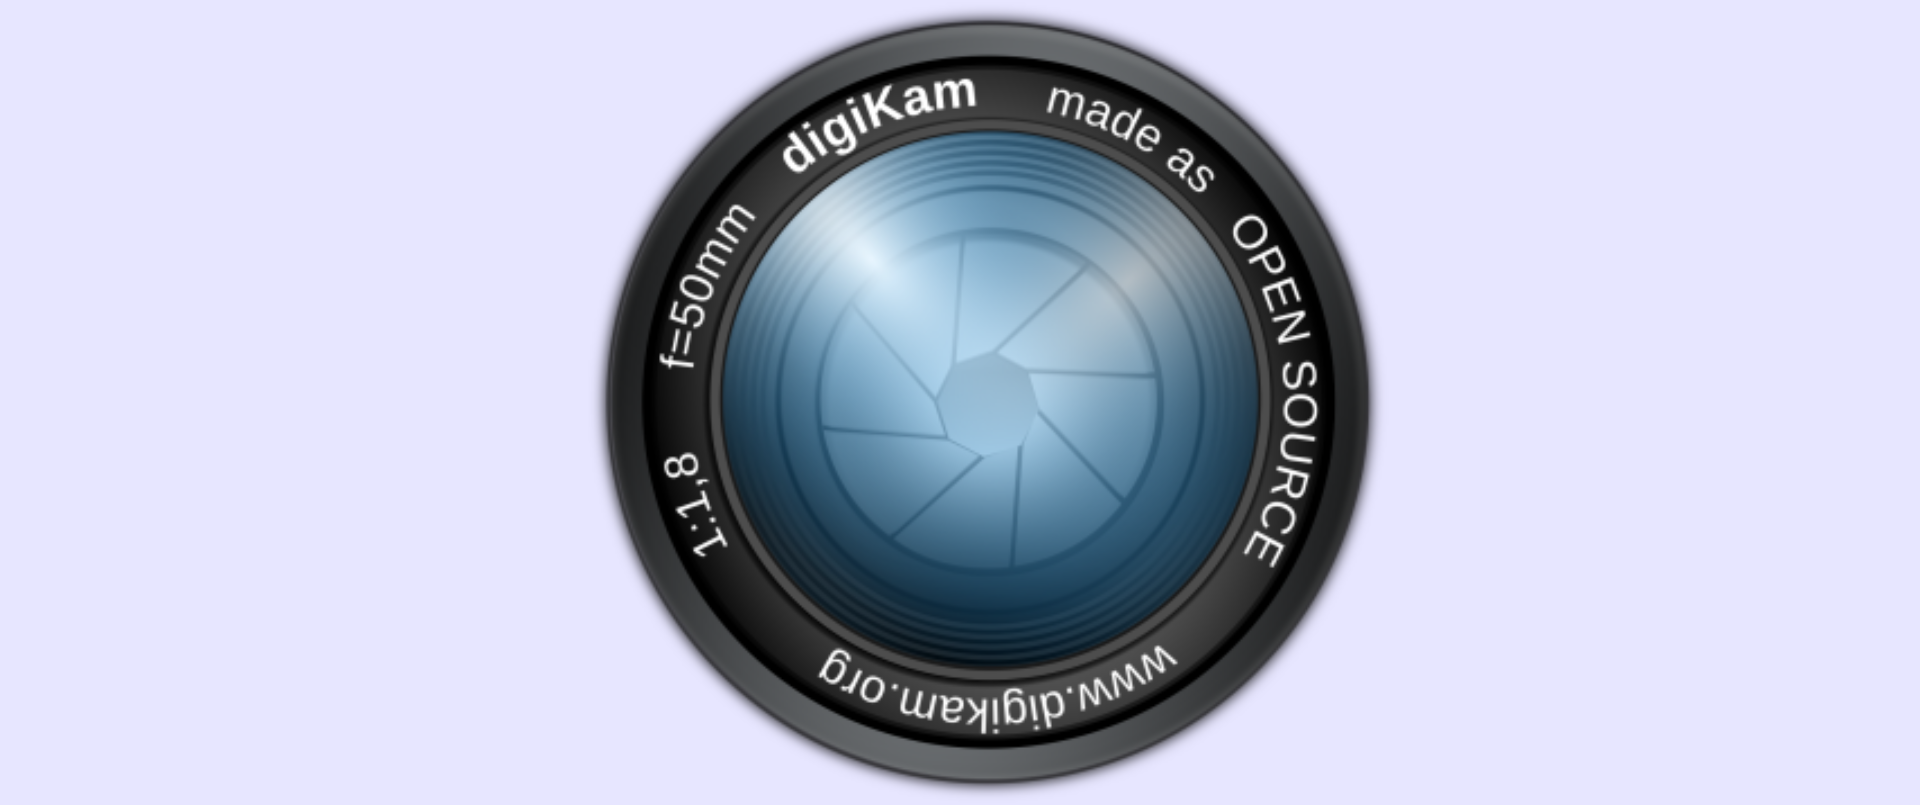 digiKam 8.3 marca automaticamente imagens usando a rede neural Deep Learning